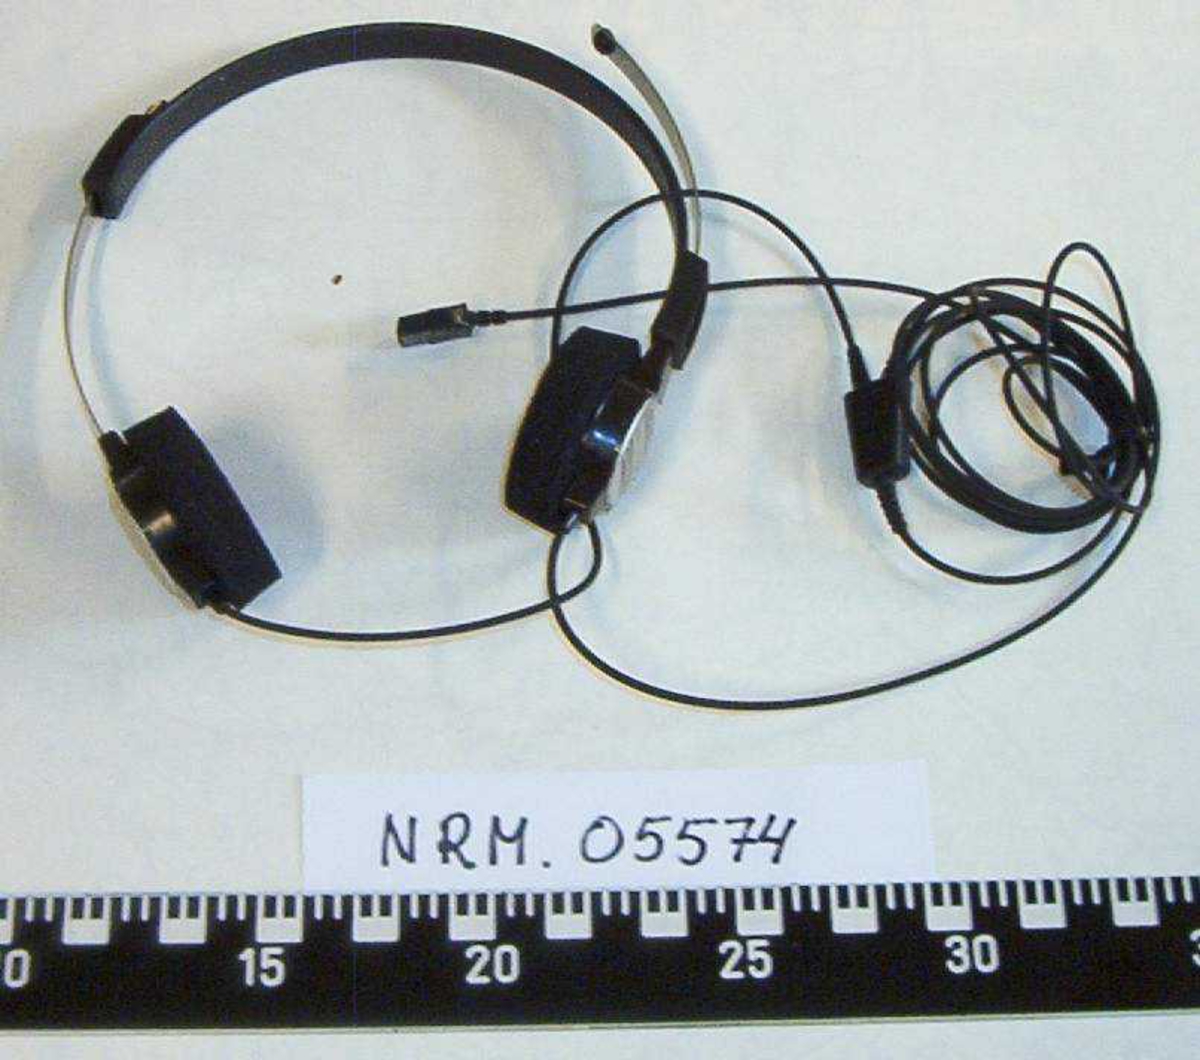 Lydbåndopptaker i tre deler:

NRM.05574a:  1 Opptaker Grundig dt. 3221,
                         CMP Kontor og Data Trondheim,
                         med tilhørende adapter.
NRM.05574b:  1 Fotpedal Grundig, Type 535B, 
                         med ledning for tilkobling opptaker.
NRM.05574c:  1 Headset Grundig, 
                         med ledning for tilkobling opptaker.